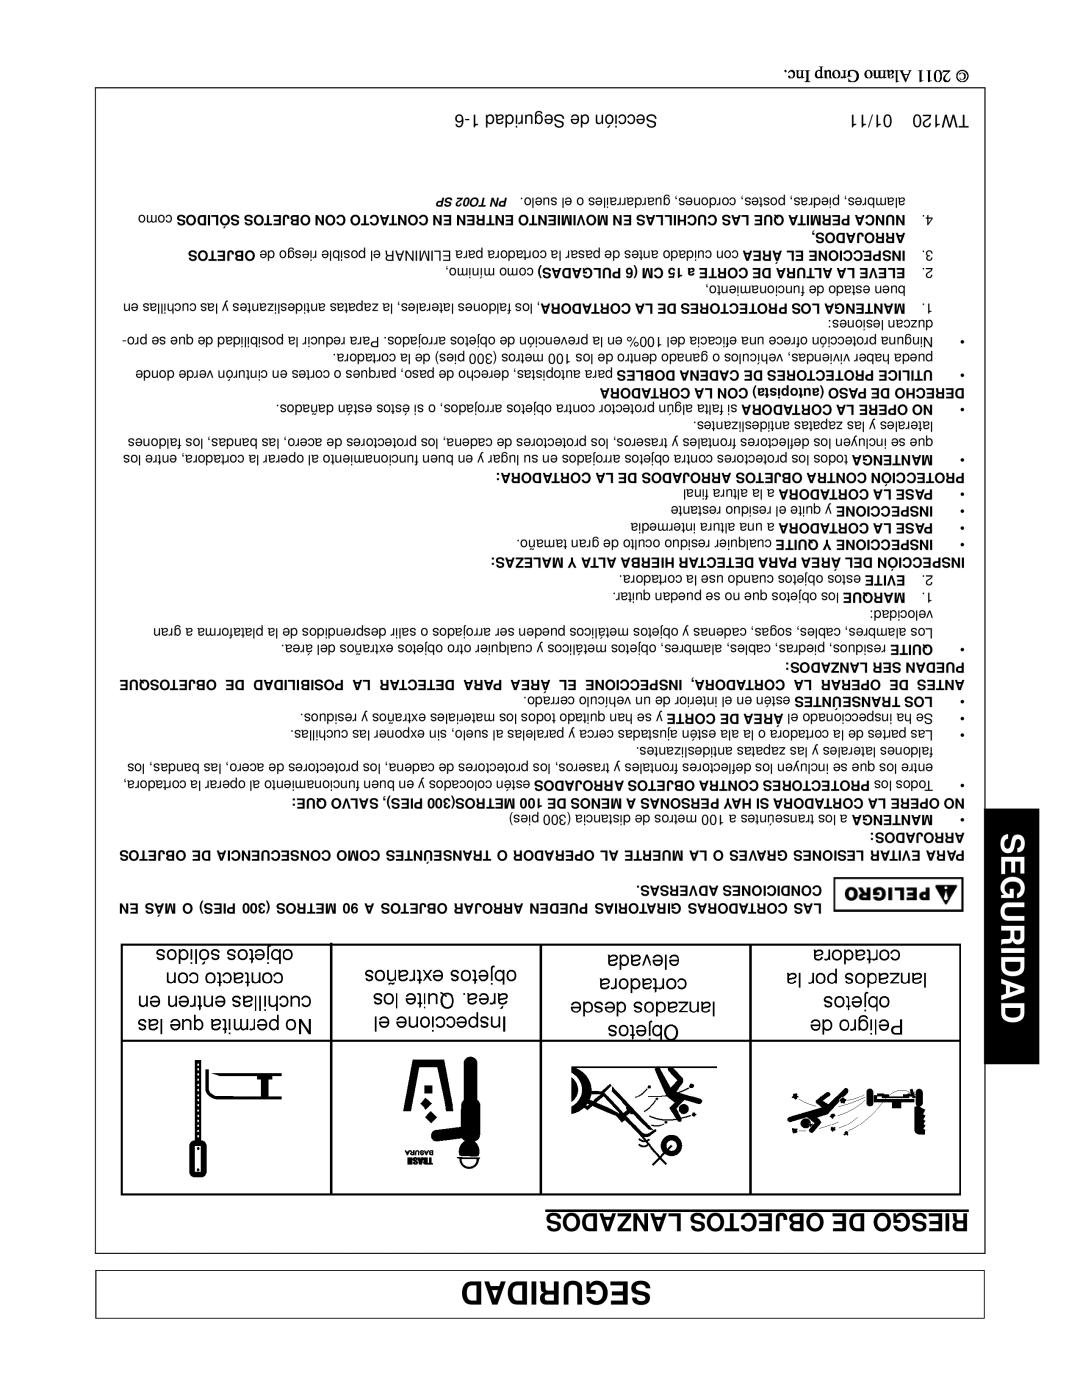 Blue Rhino FC-0025, FC-0024 manual Lanzados Objectos De Riesgo, 6-1Seguridad de Sección, 01/11 TW120 